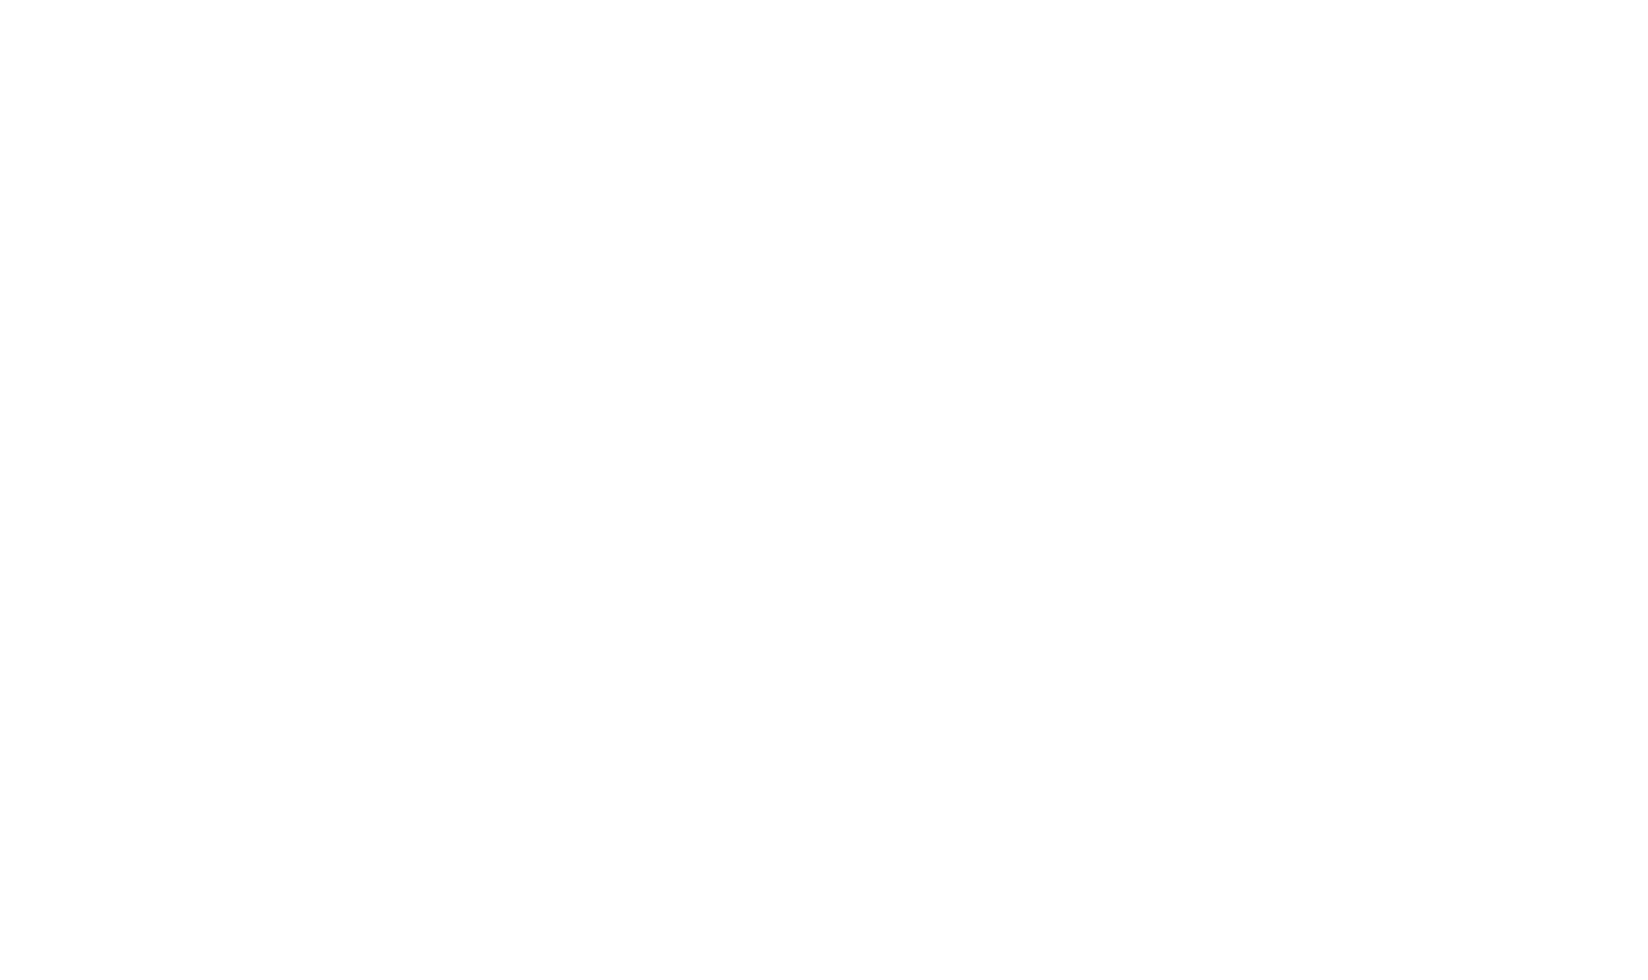 icône de nuage dans un style plat png